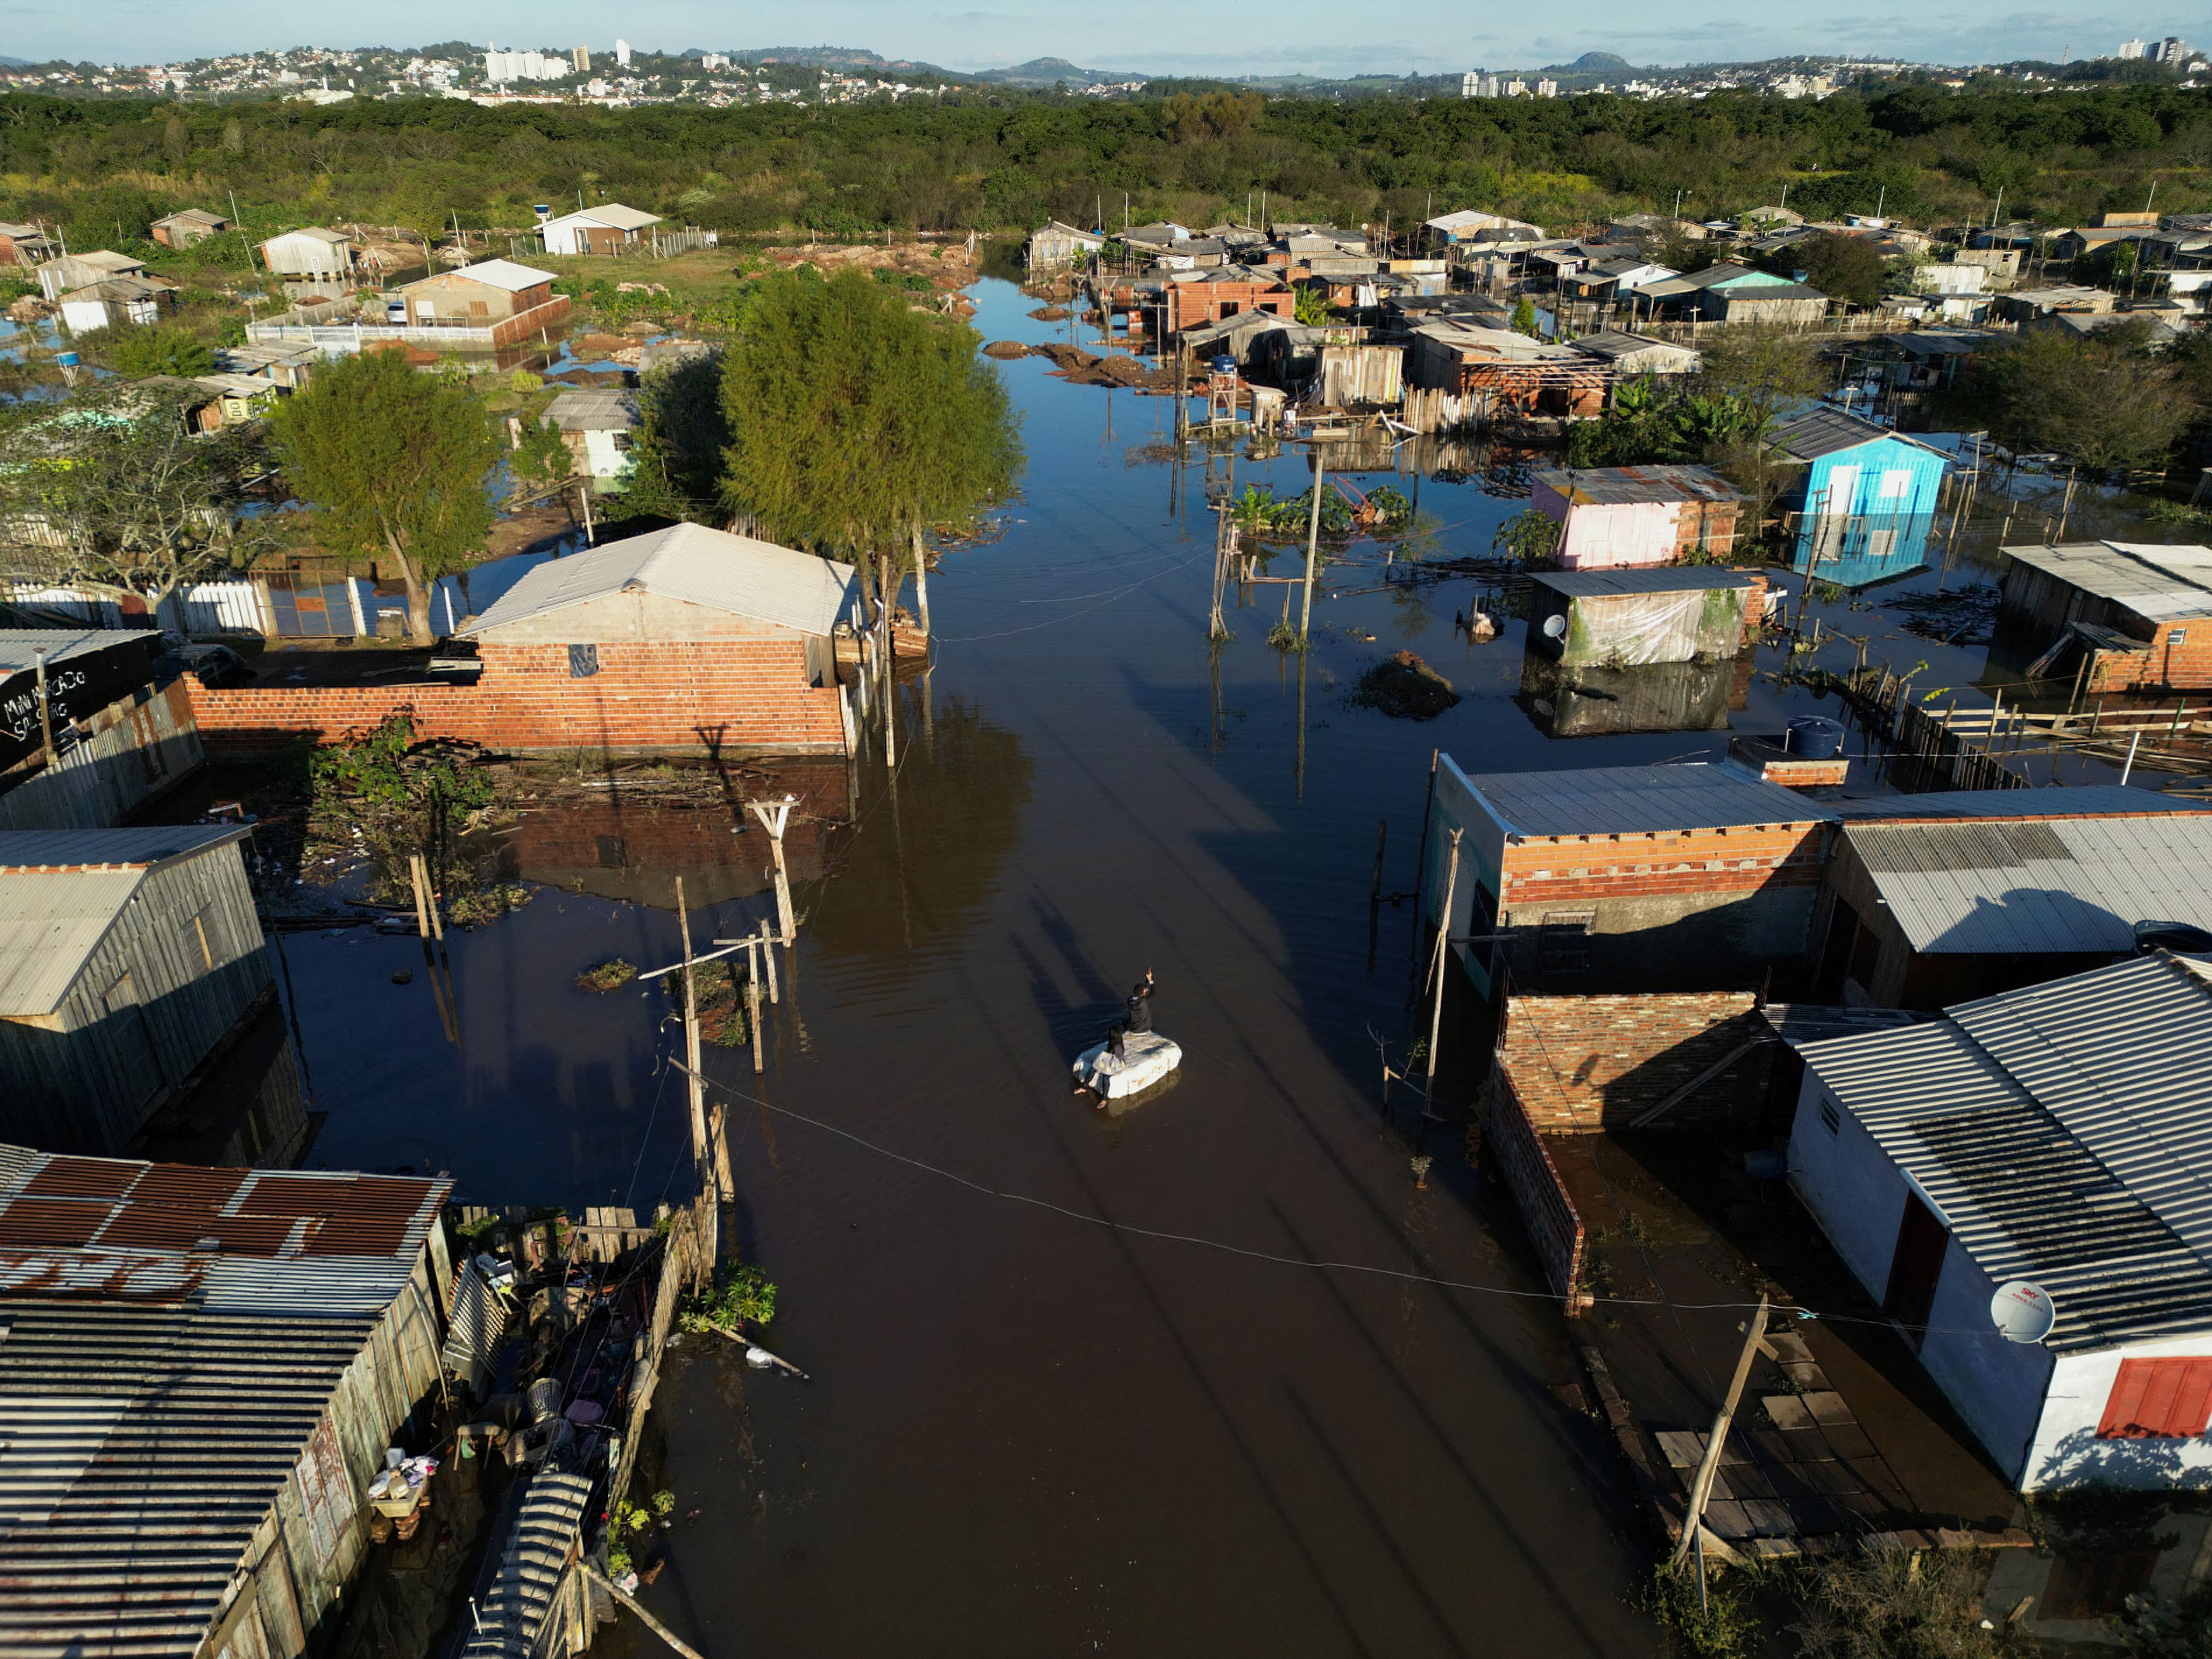 Κυκλώνας στη Βραζιλία: Τουλάχιστον 13 άνθρωποι έχασαν τη ζωή τους και άλλοι 3 αγνοούνται